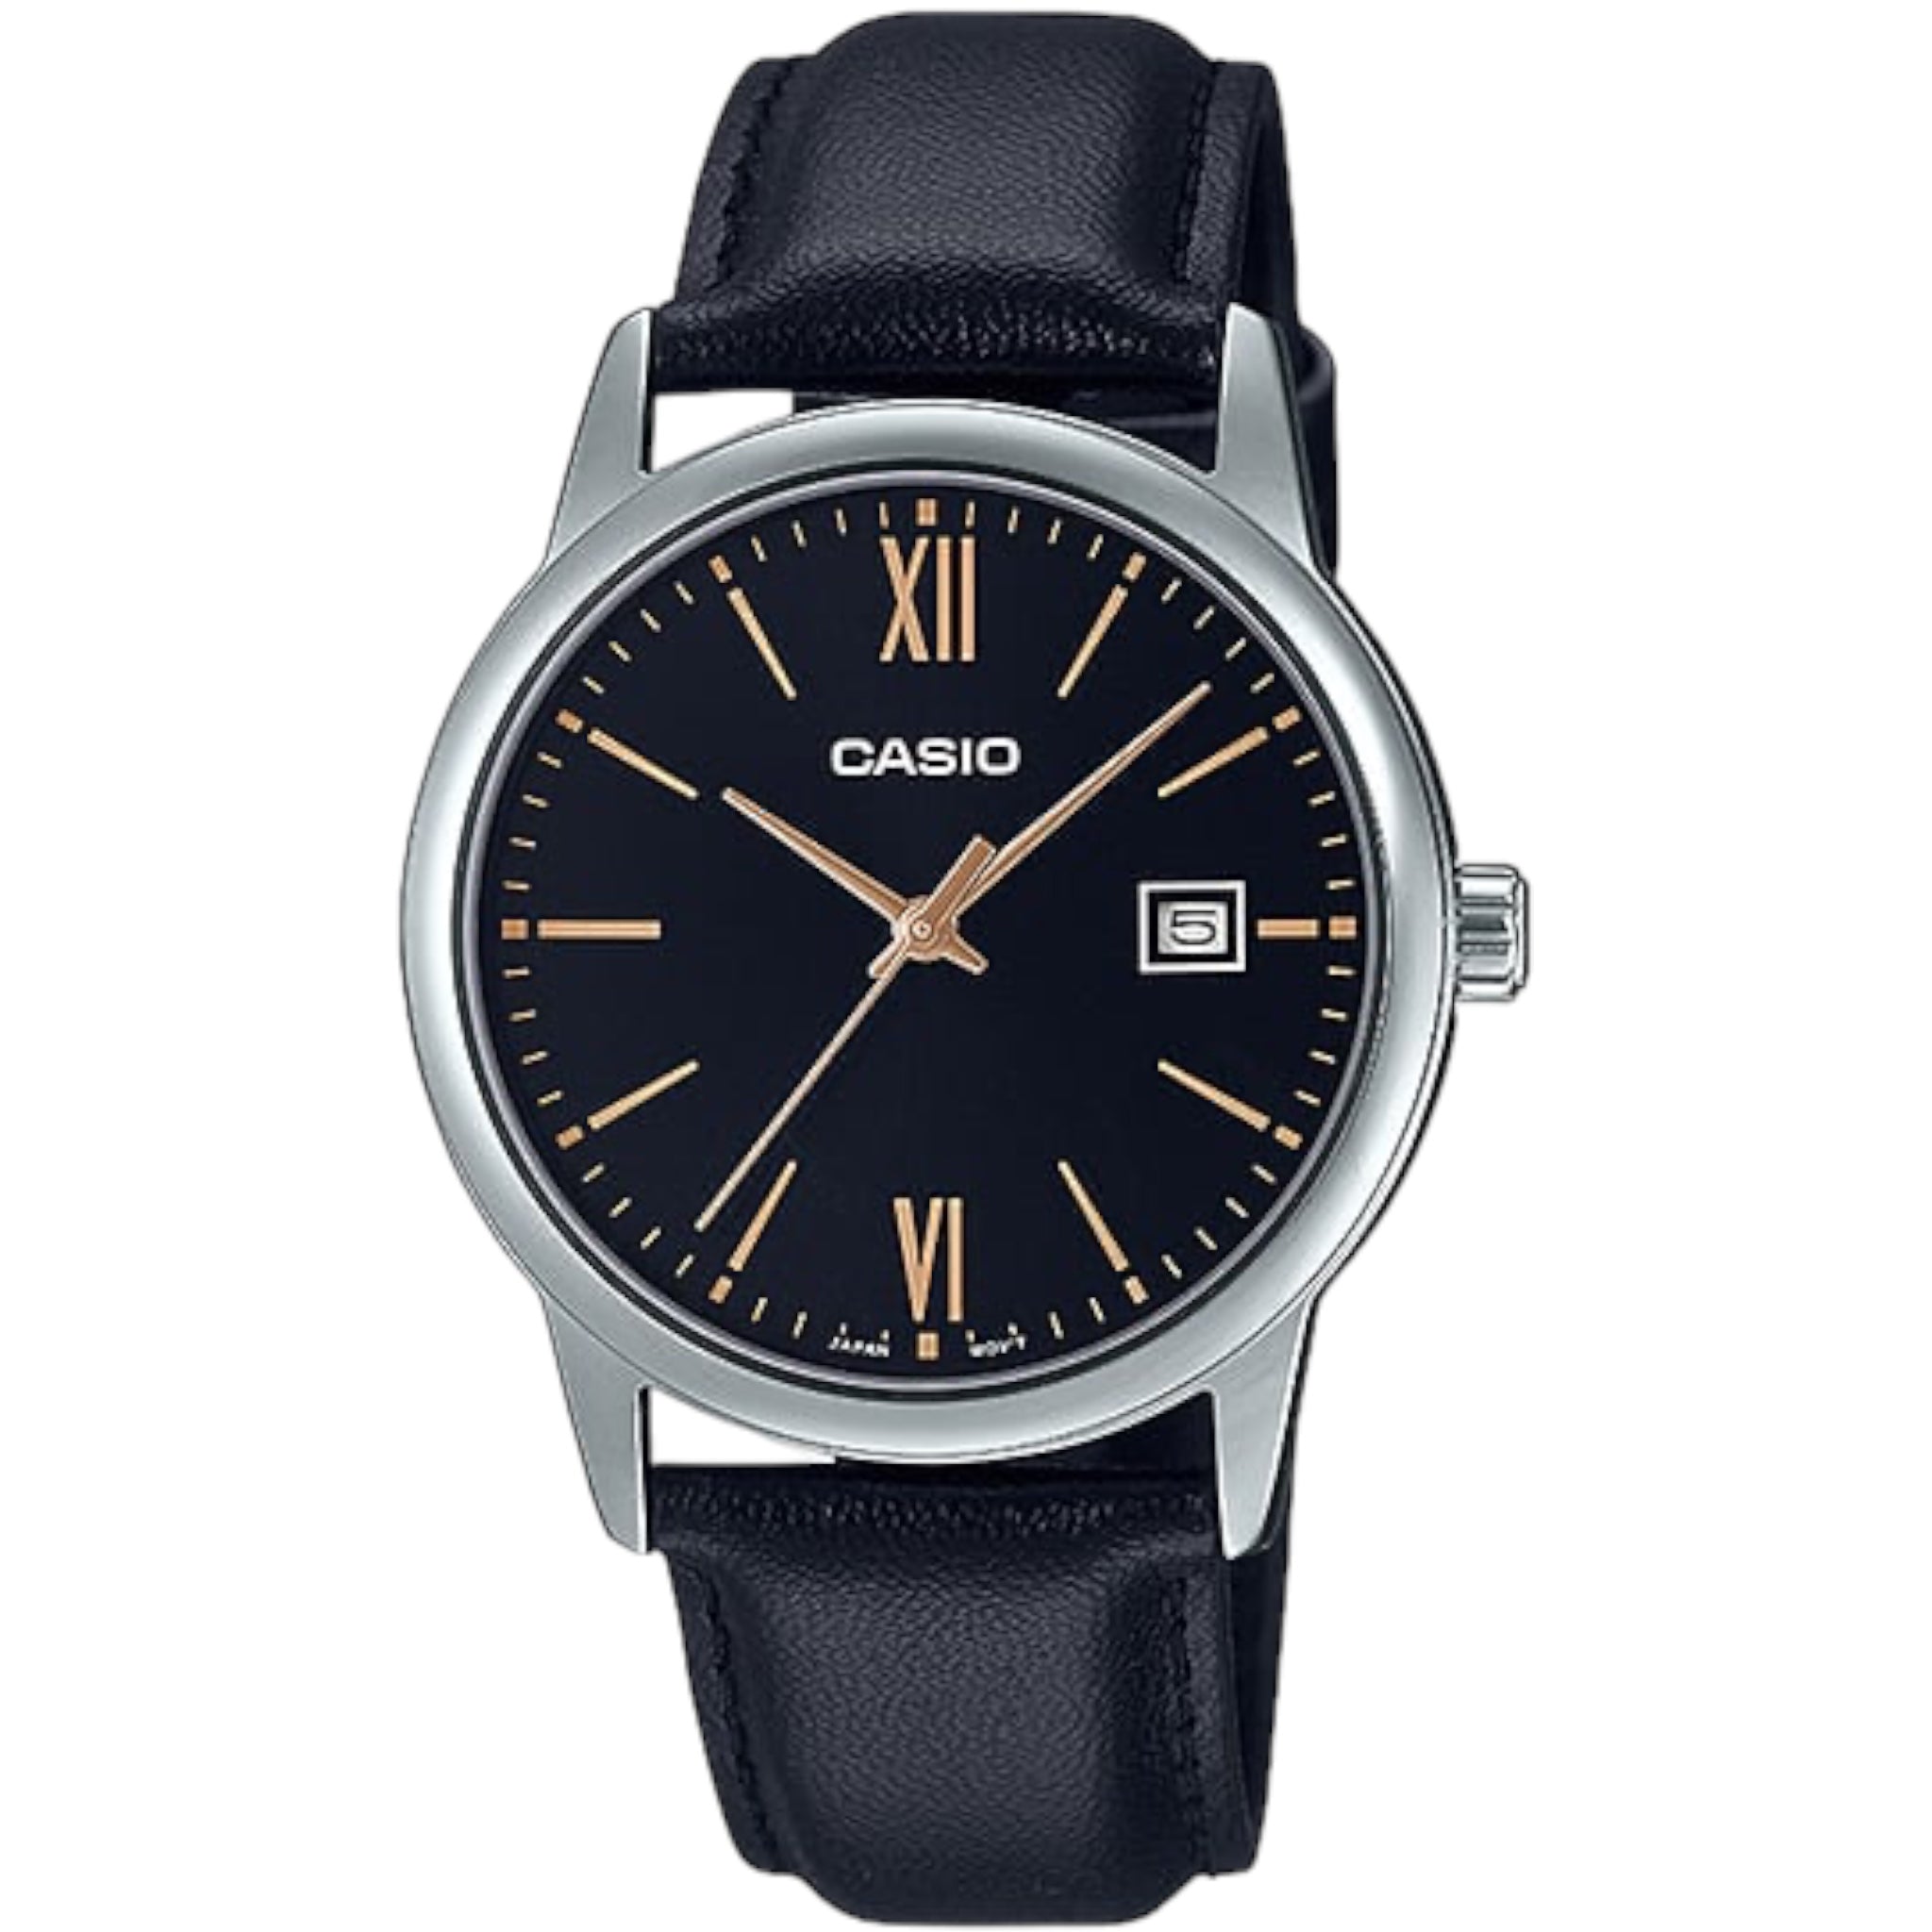 Casio Men's Watch MTP-V002L-1B3